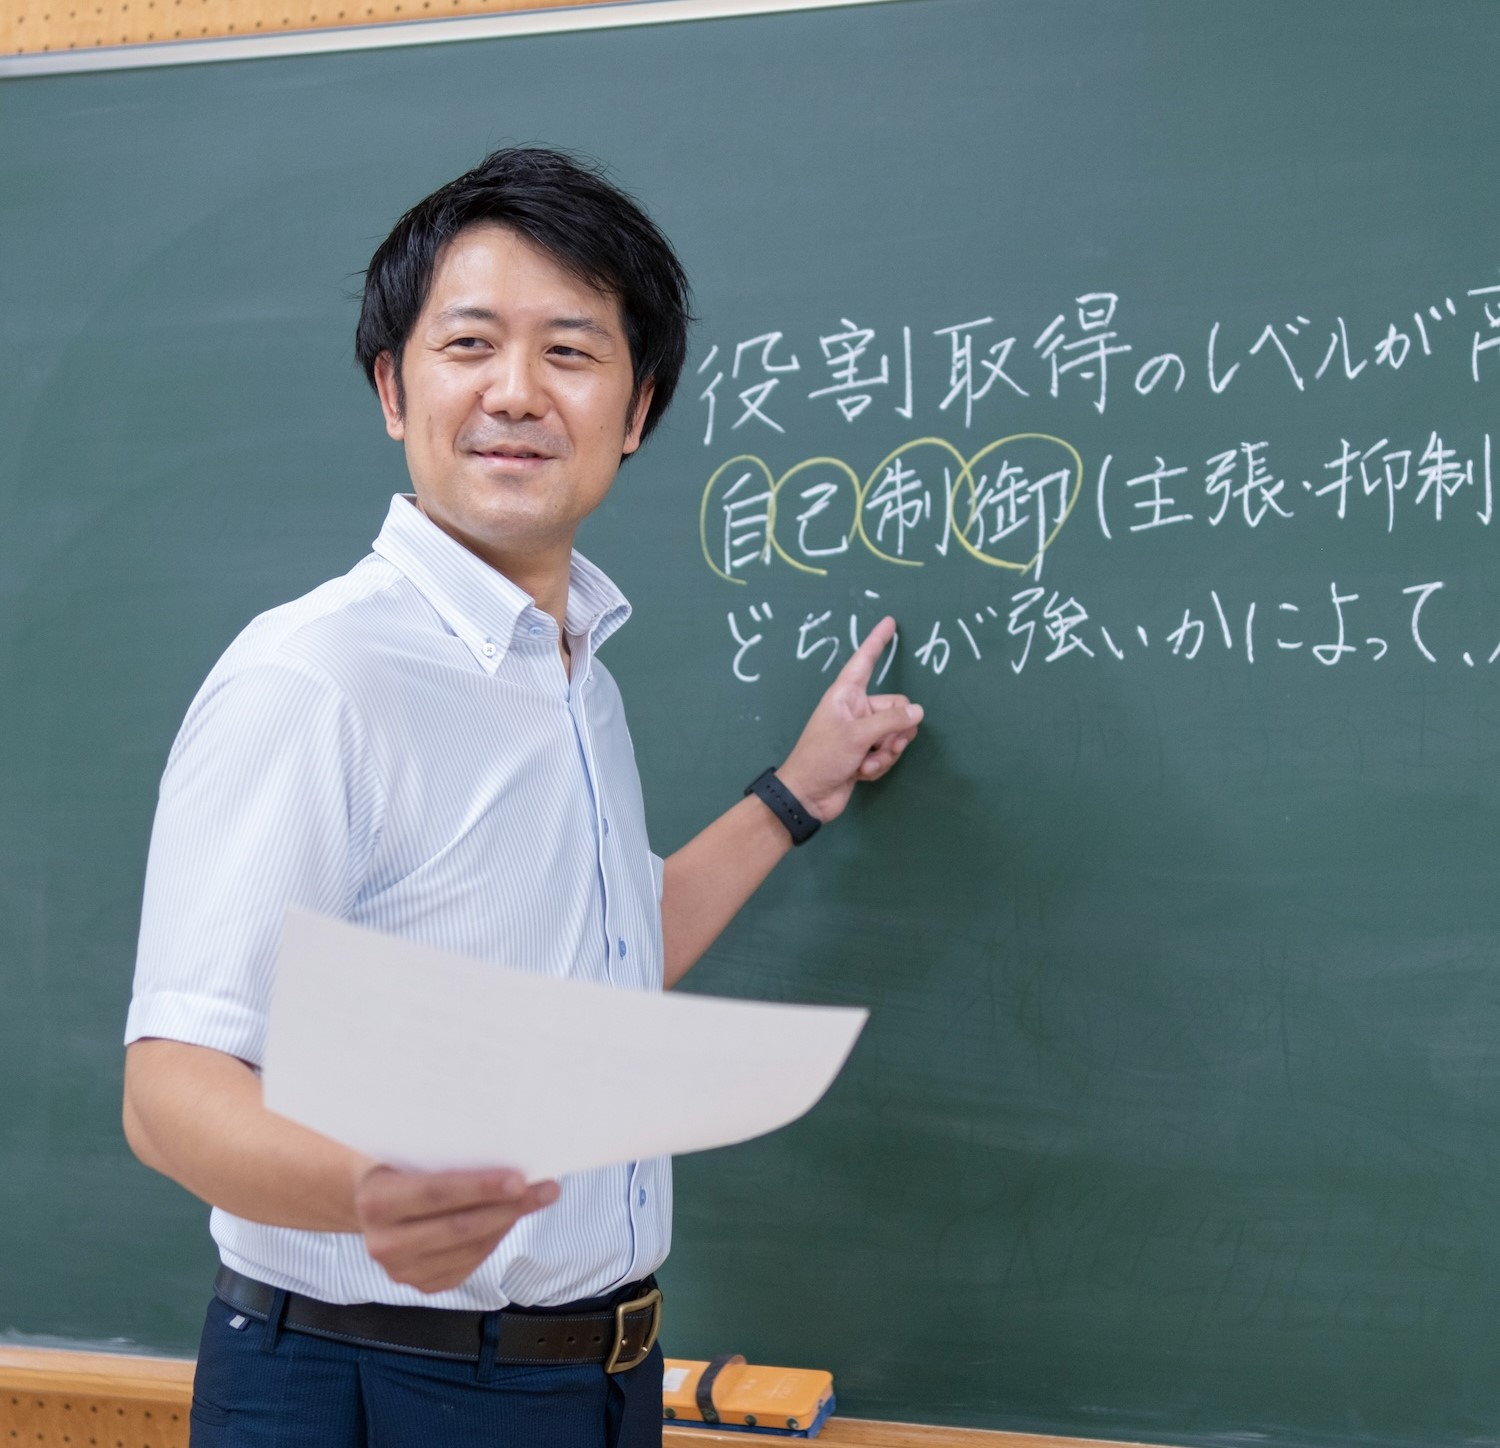 人間形成コース修了生の男性が、黒板に書いた文字を指差しながら、片手にプリントを持って生徒に教えている様子